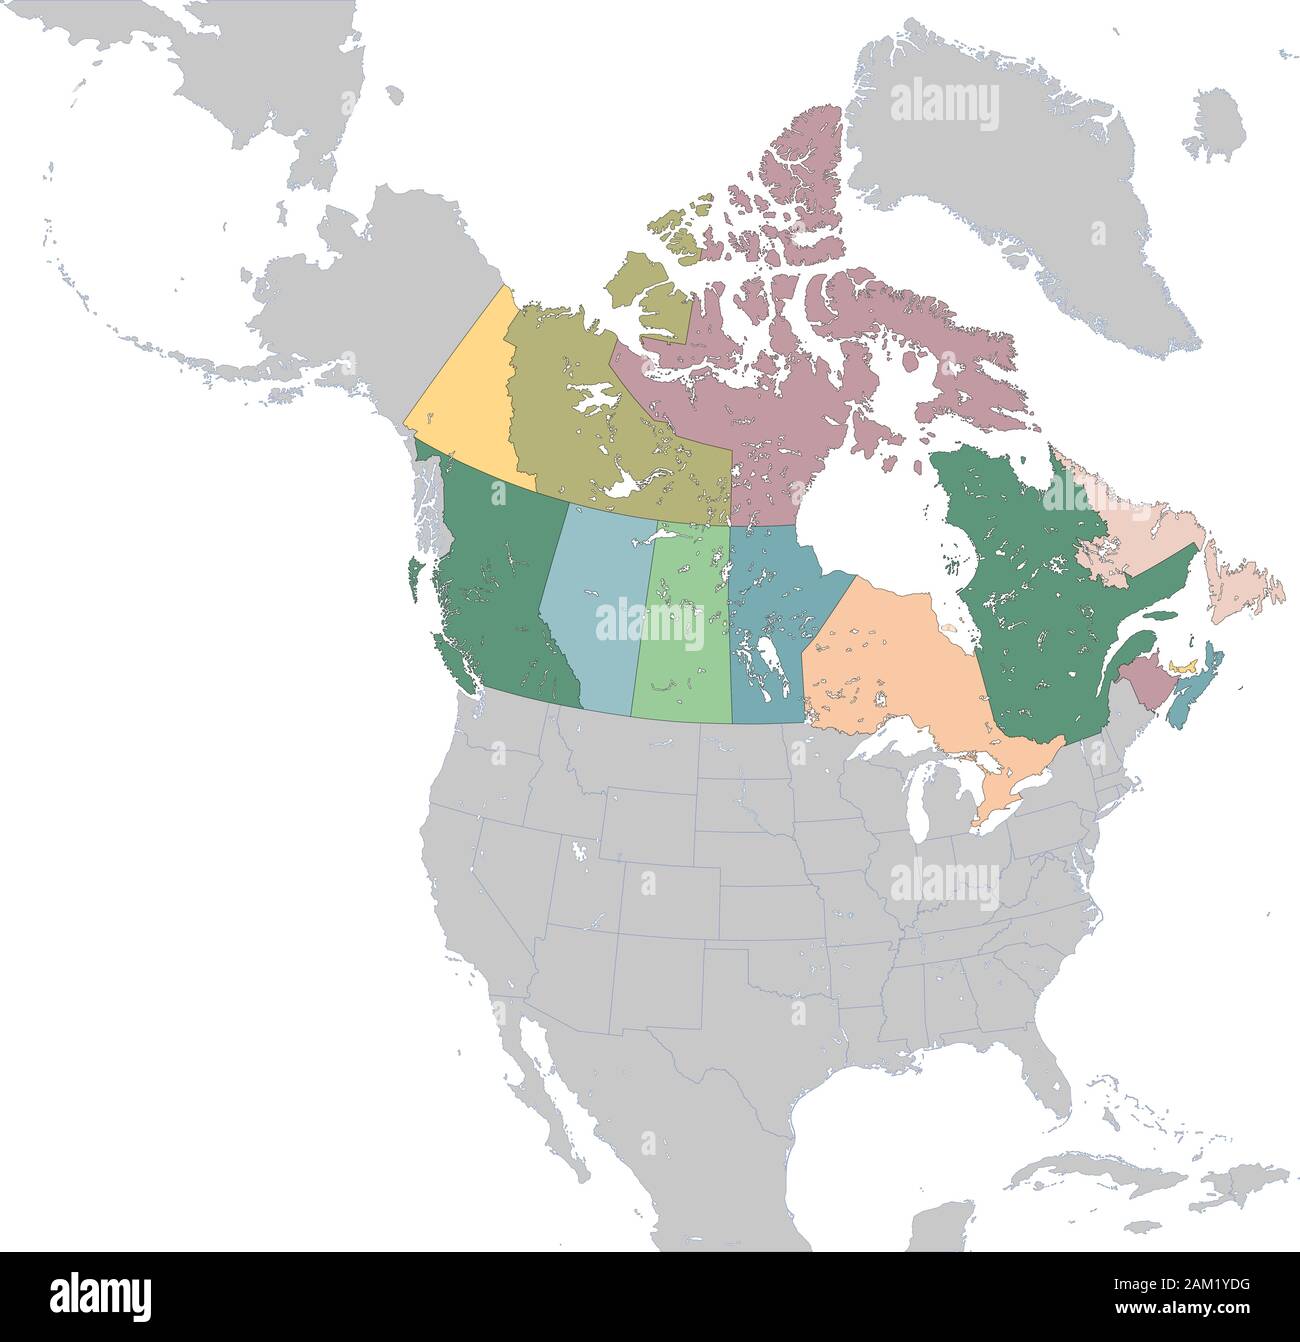 Illustration carte des provinces et territoires du Canada Illustration de Vecteur